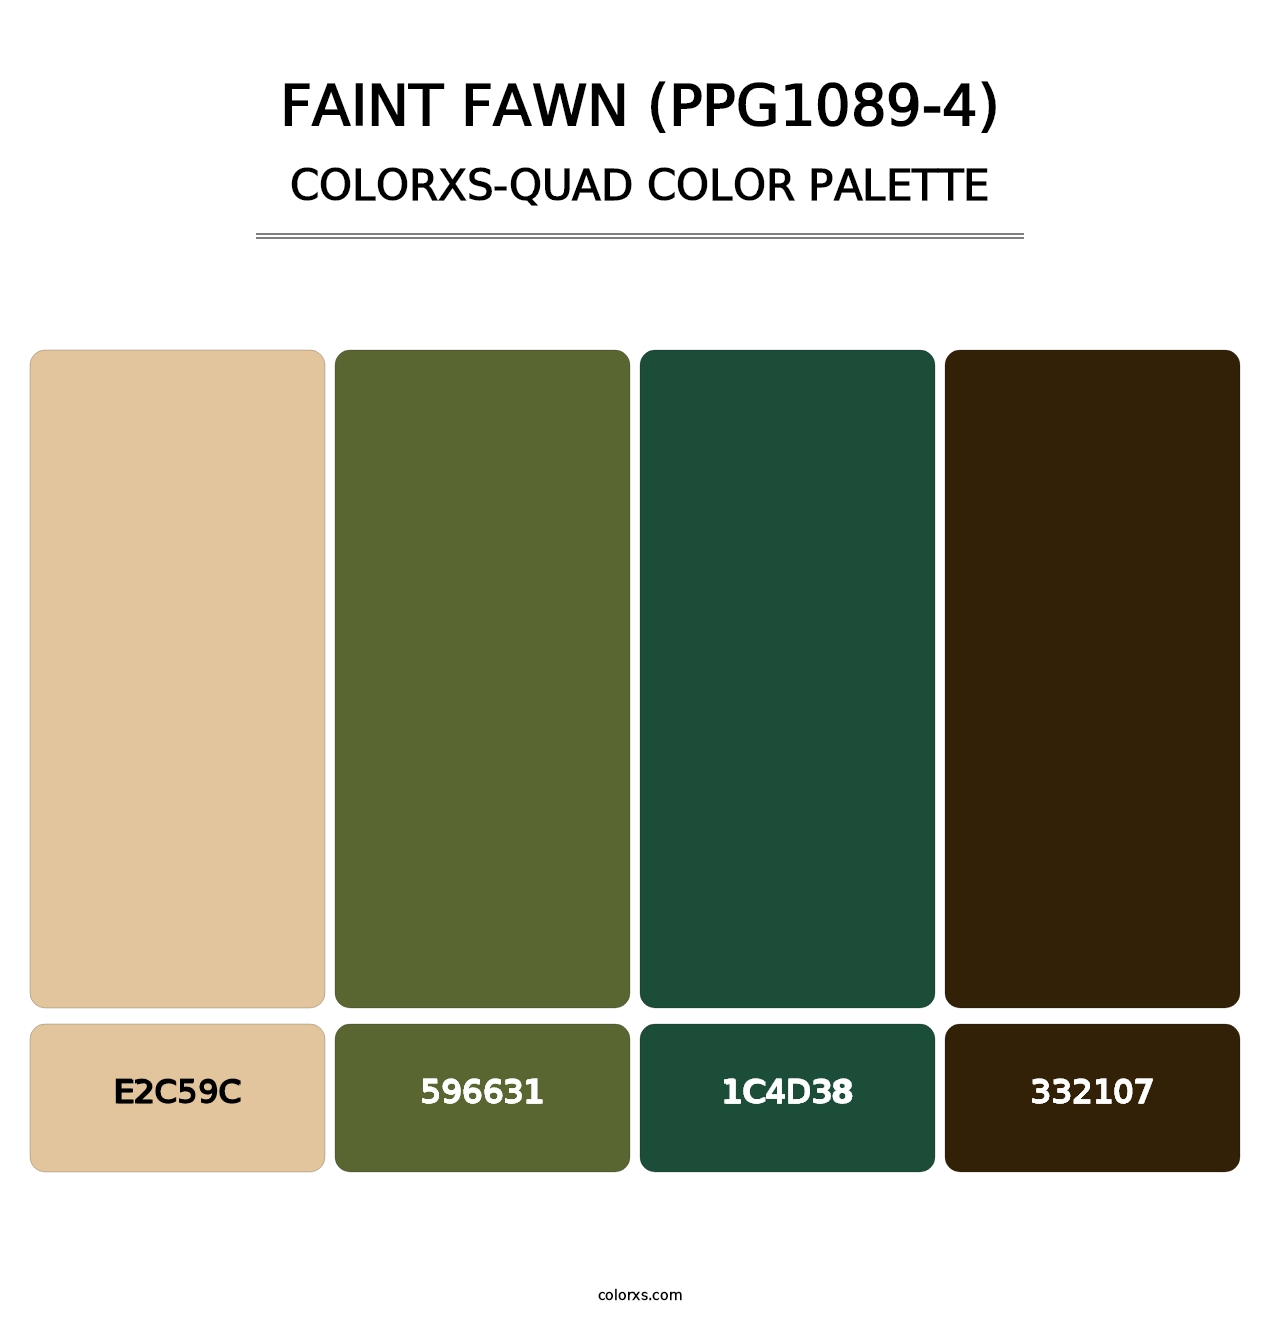 Faint Fawn (PPG1089-4) - Colorxs Quad Palette